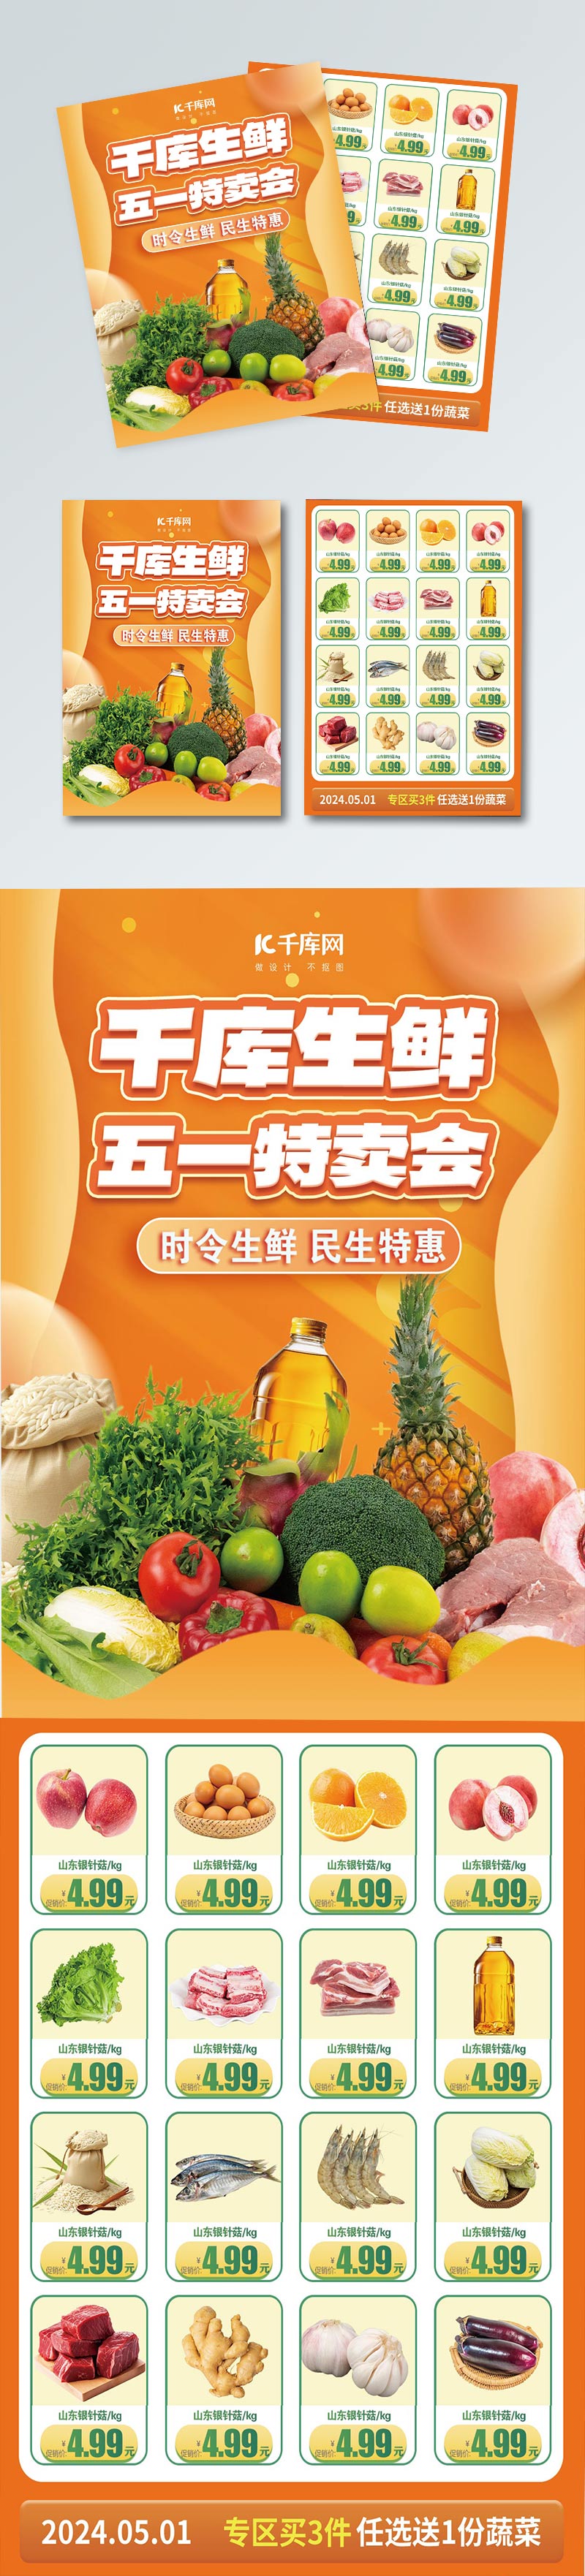 超市大促生鲜水果橙色简约促销海报图片